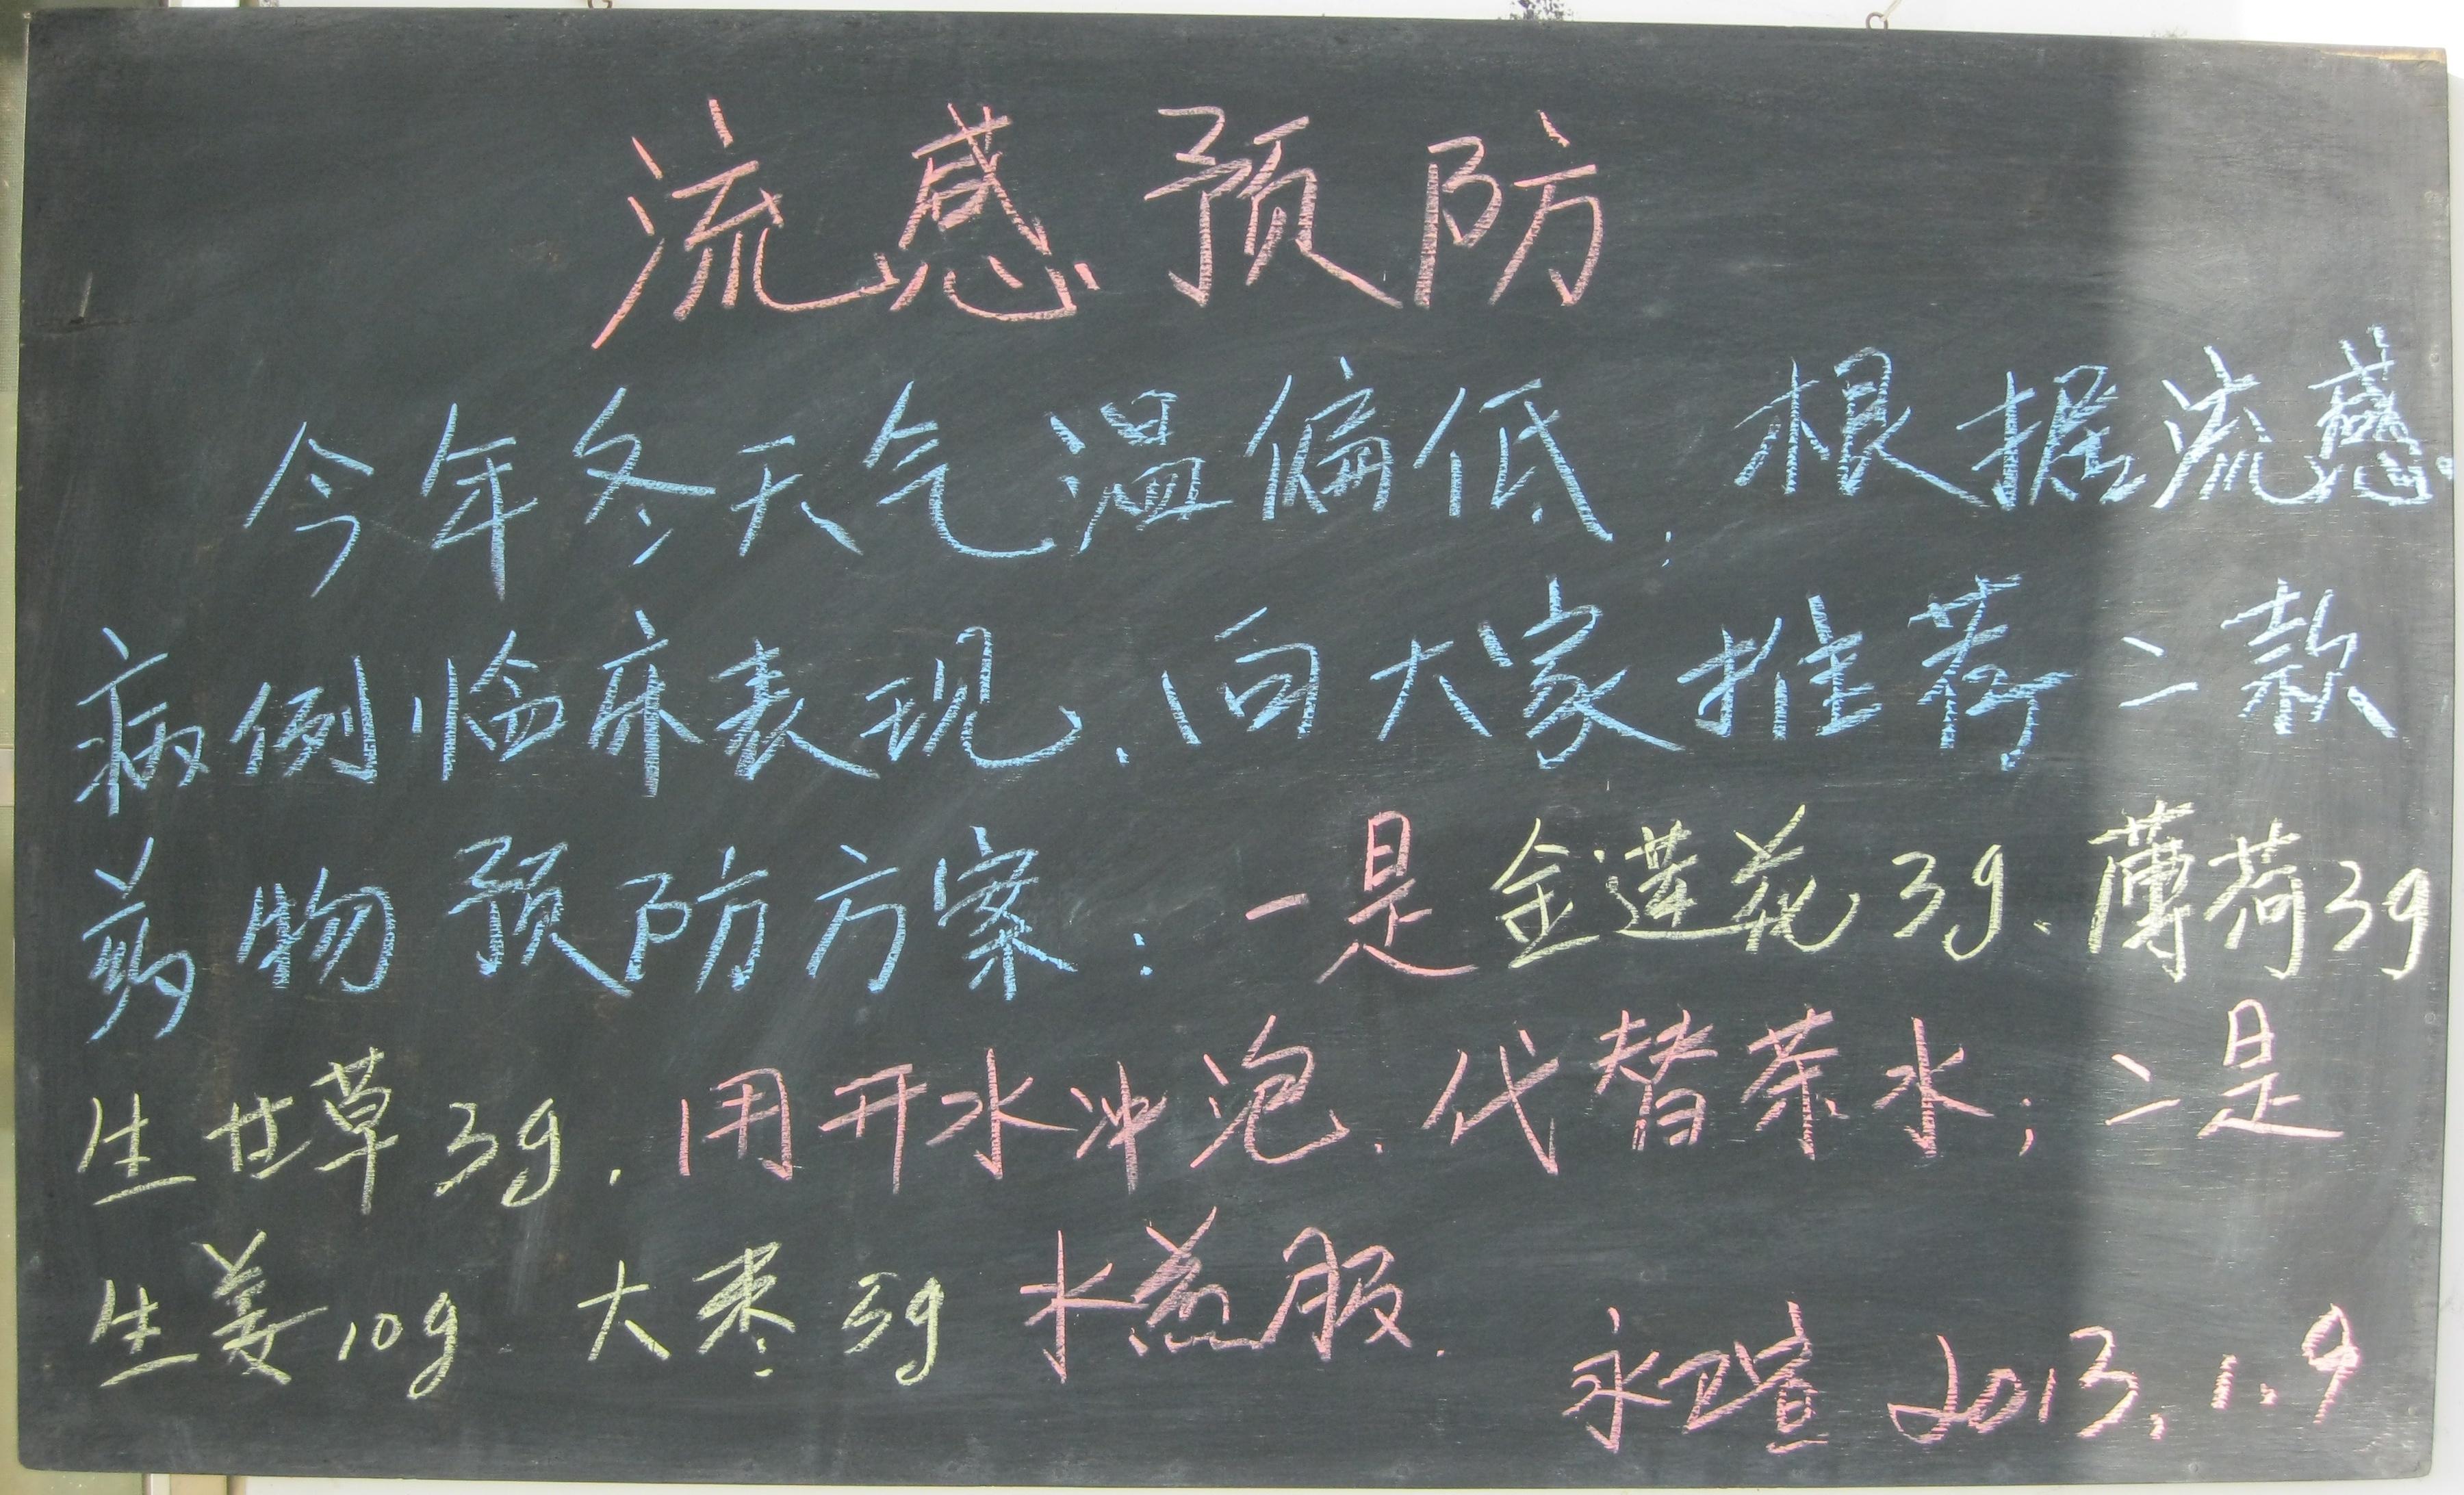 2013年庄浪县永宁乡卫生院黑板报图片